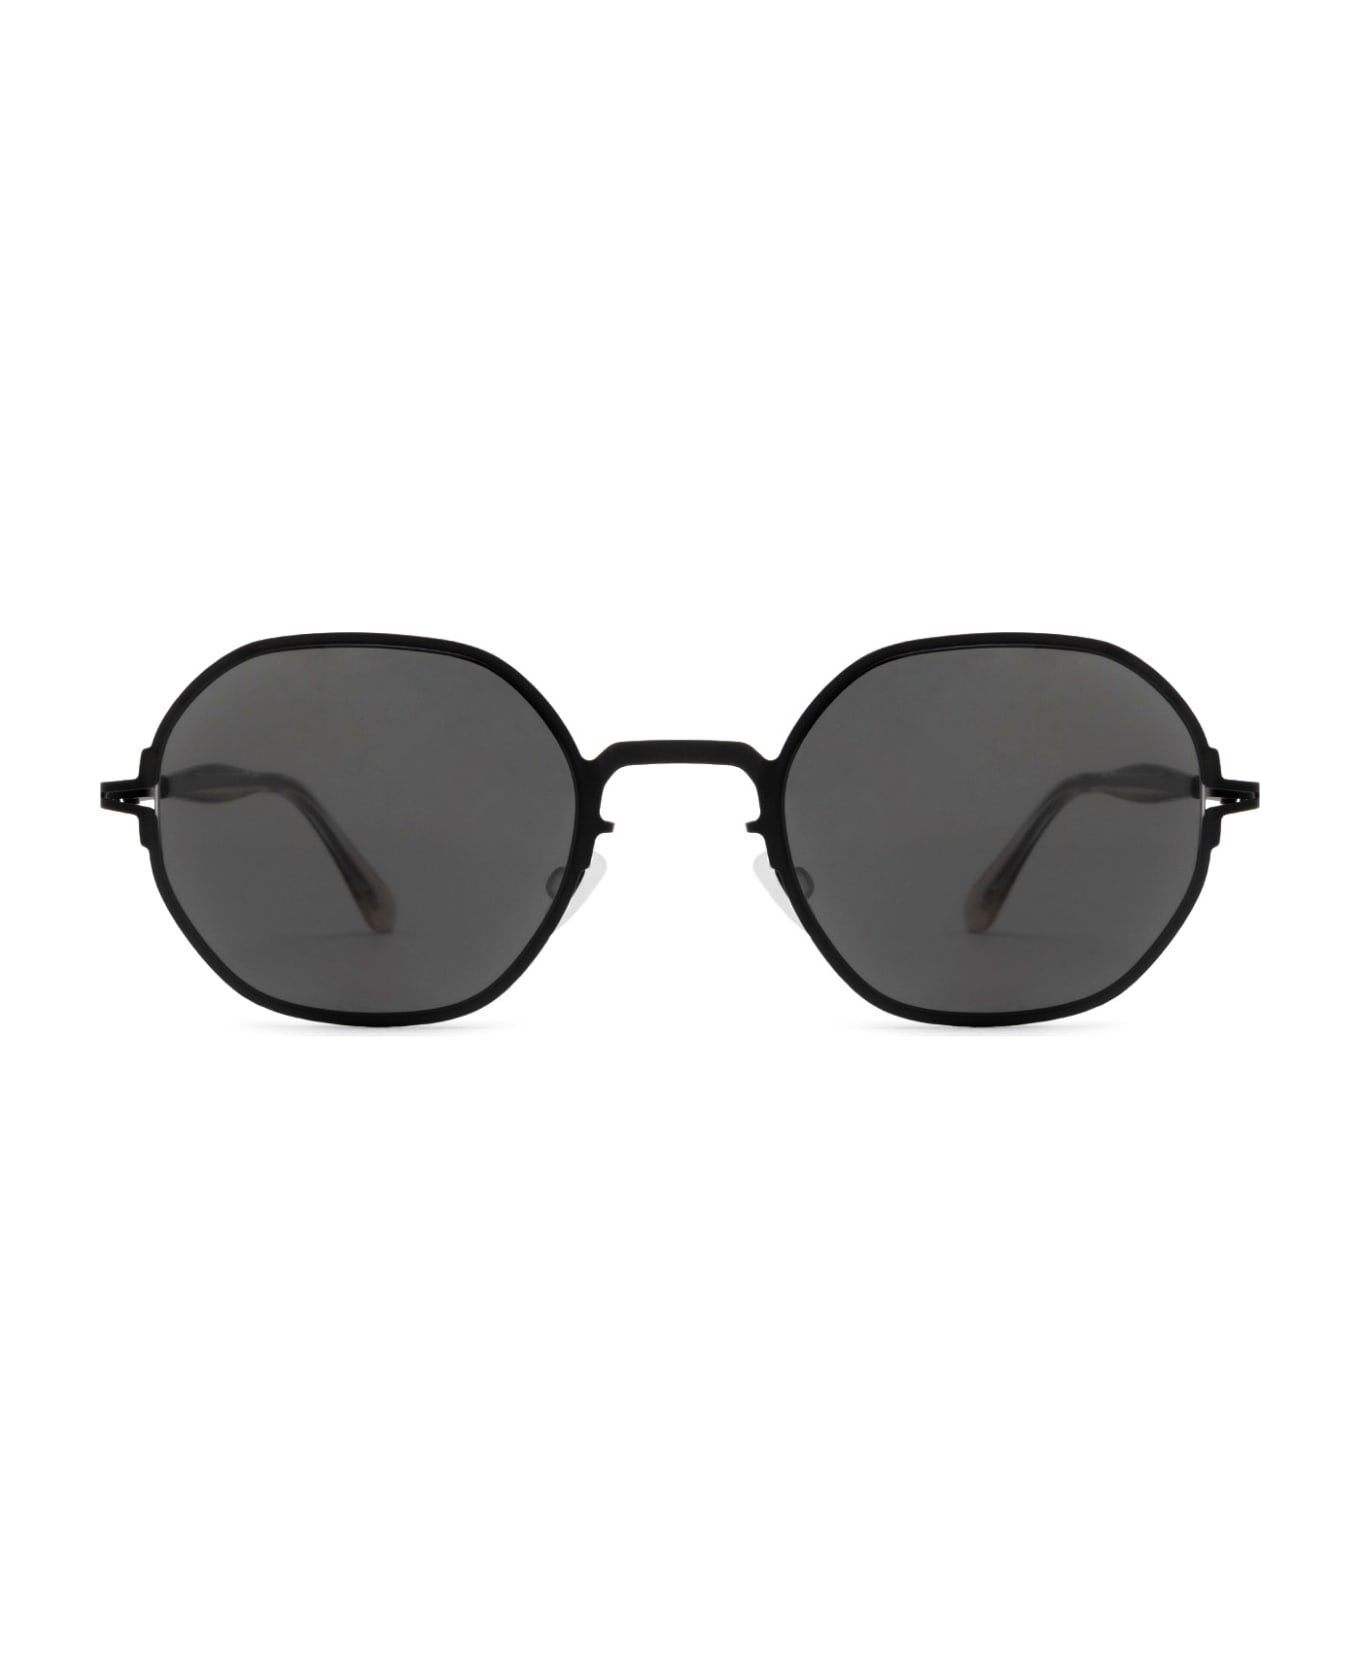 Mykita Santana Sun Black Sunglasses - Black